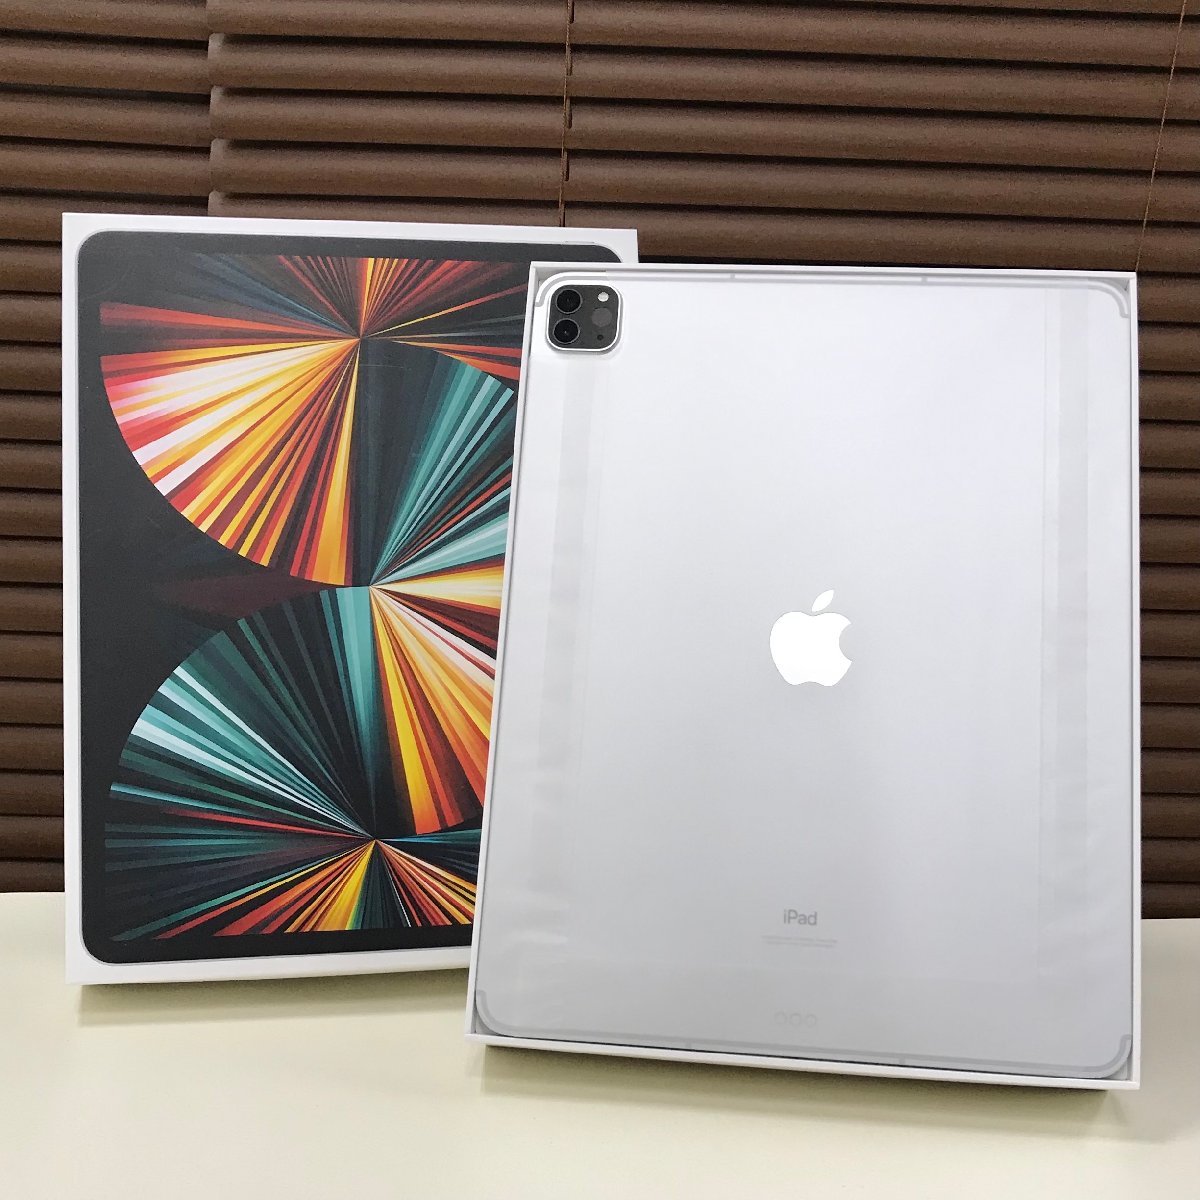 正規販売店品 Pro iPad 第5世代 silver Wi-Fi 128GB 12.9インチ タブレット